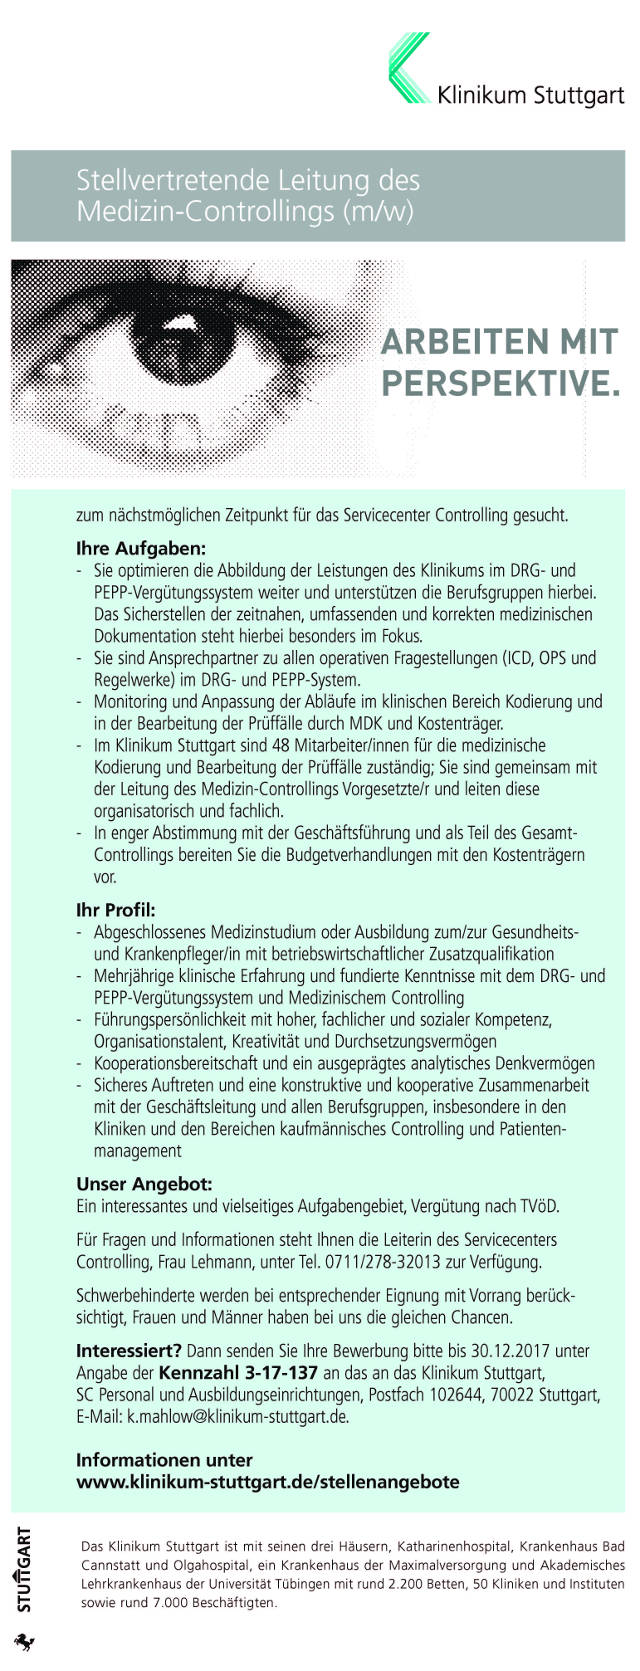 Klinikum Stuttgart: Stellvertretende Leitung des Medizin-Controllings (m/w)